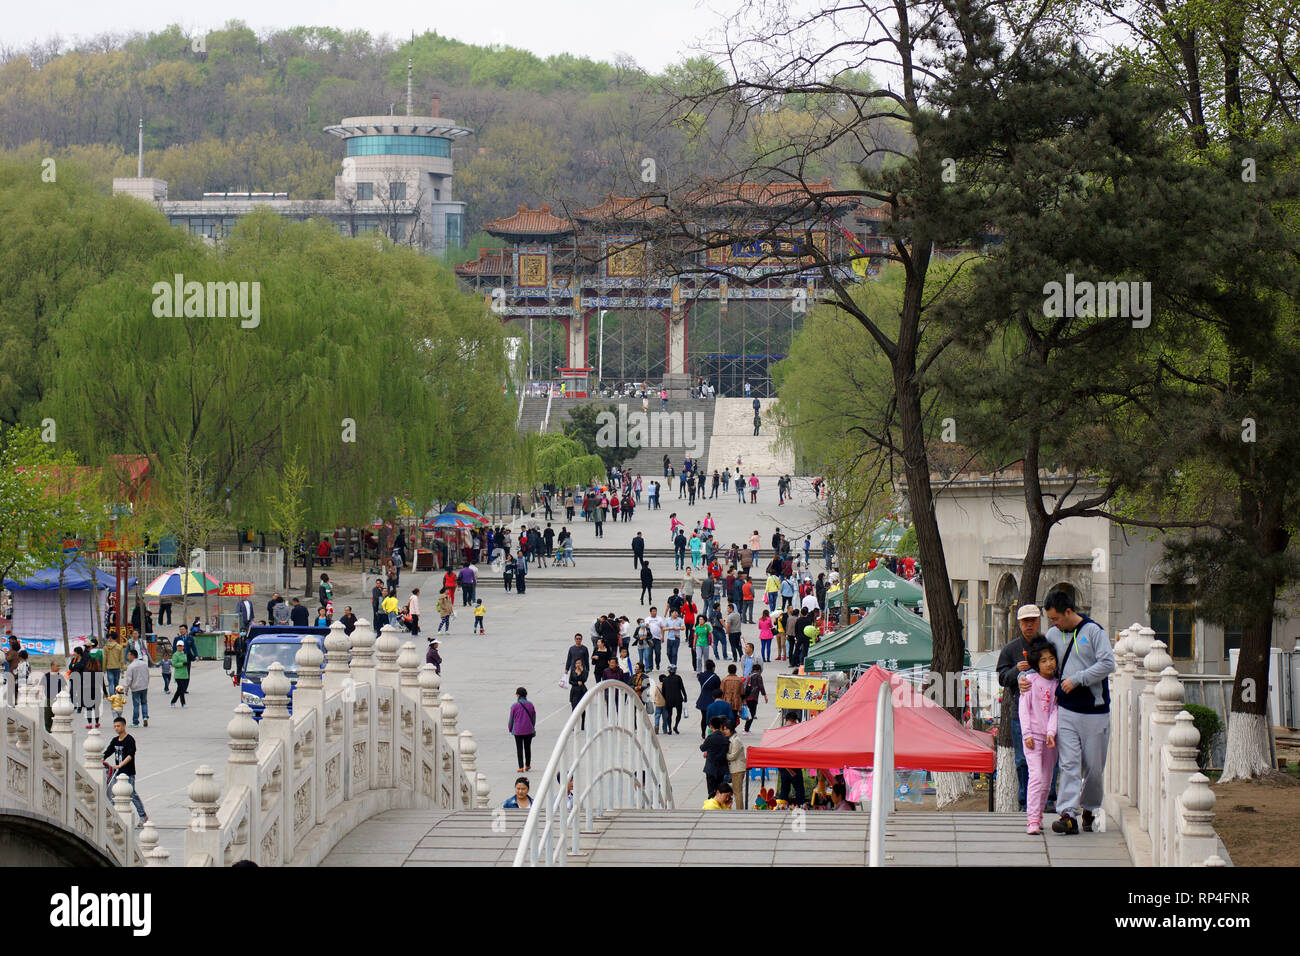 Les Chinois marcher et s'amuser au printemps dans le parc 219. Parcs d'attractions en Chine. Anshan, province de Liaoning, Chine. 20 avril 2014 Banque D'Images